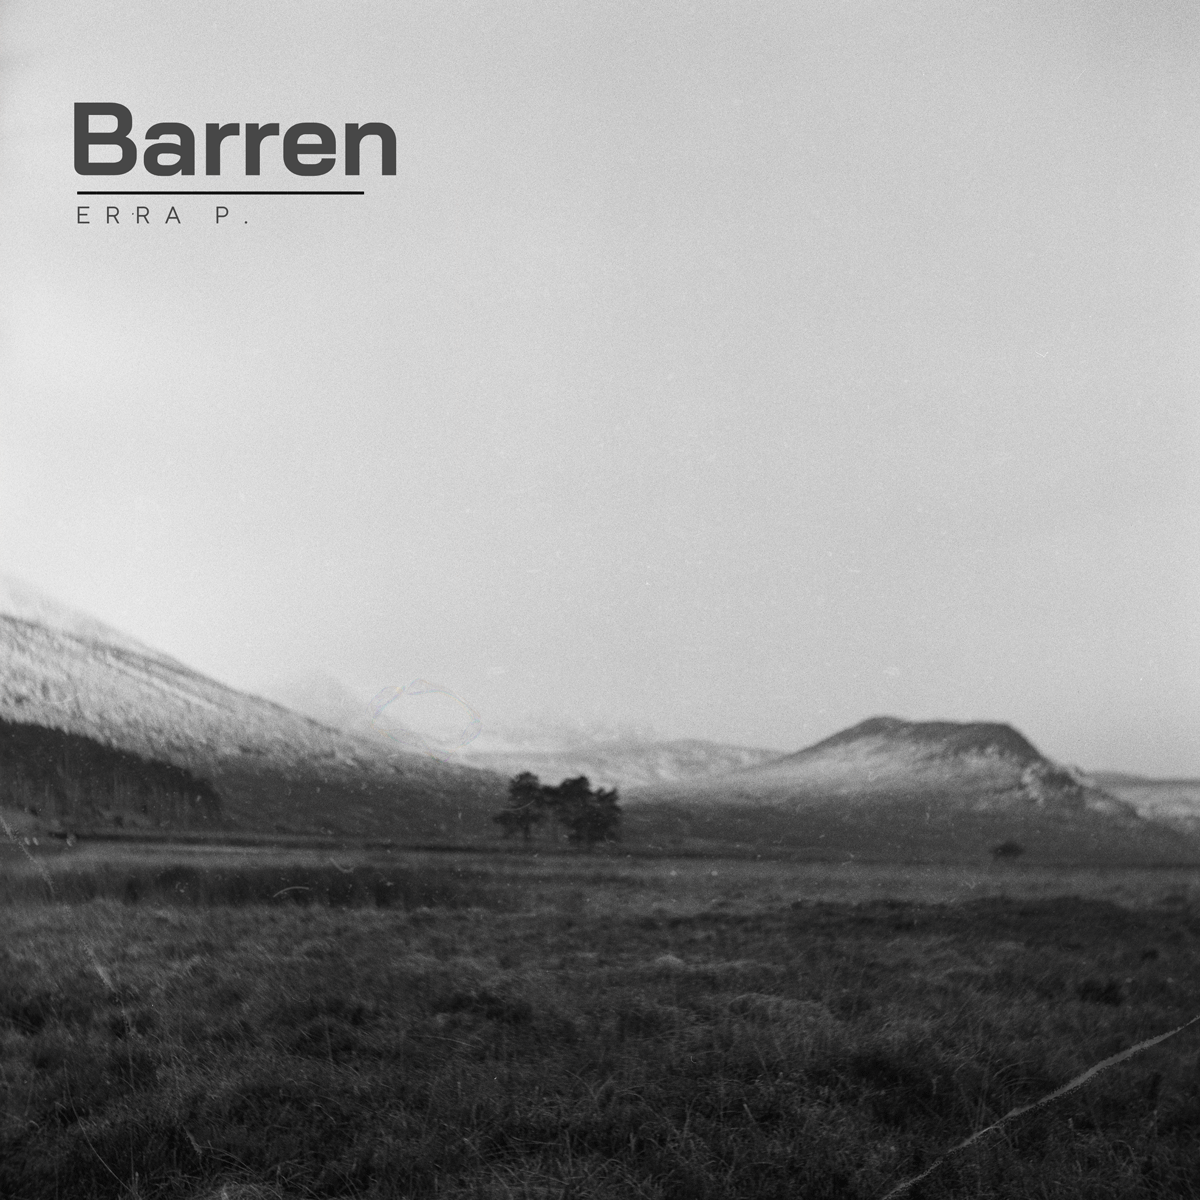 Erra P. present their new album “Barren”